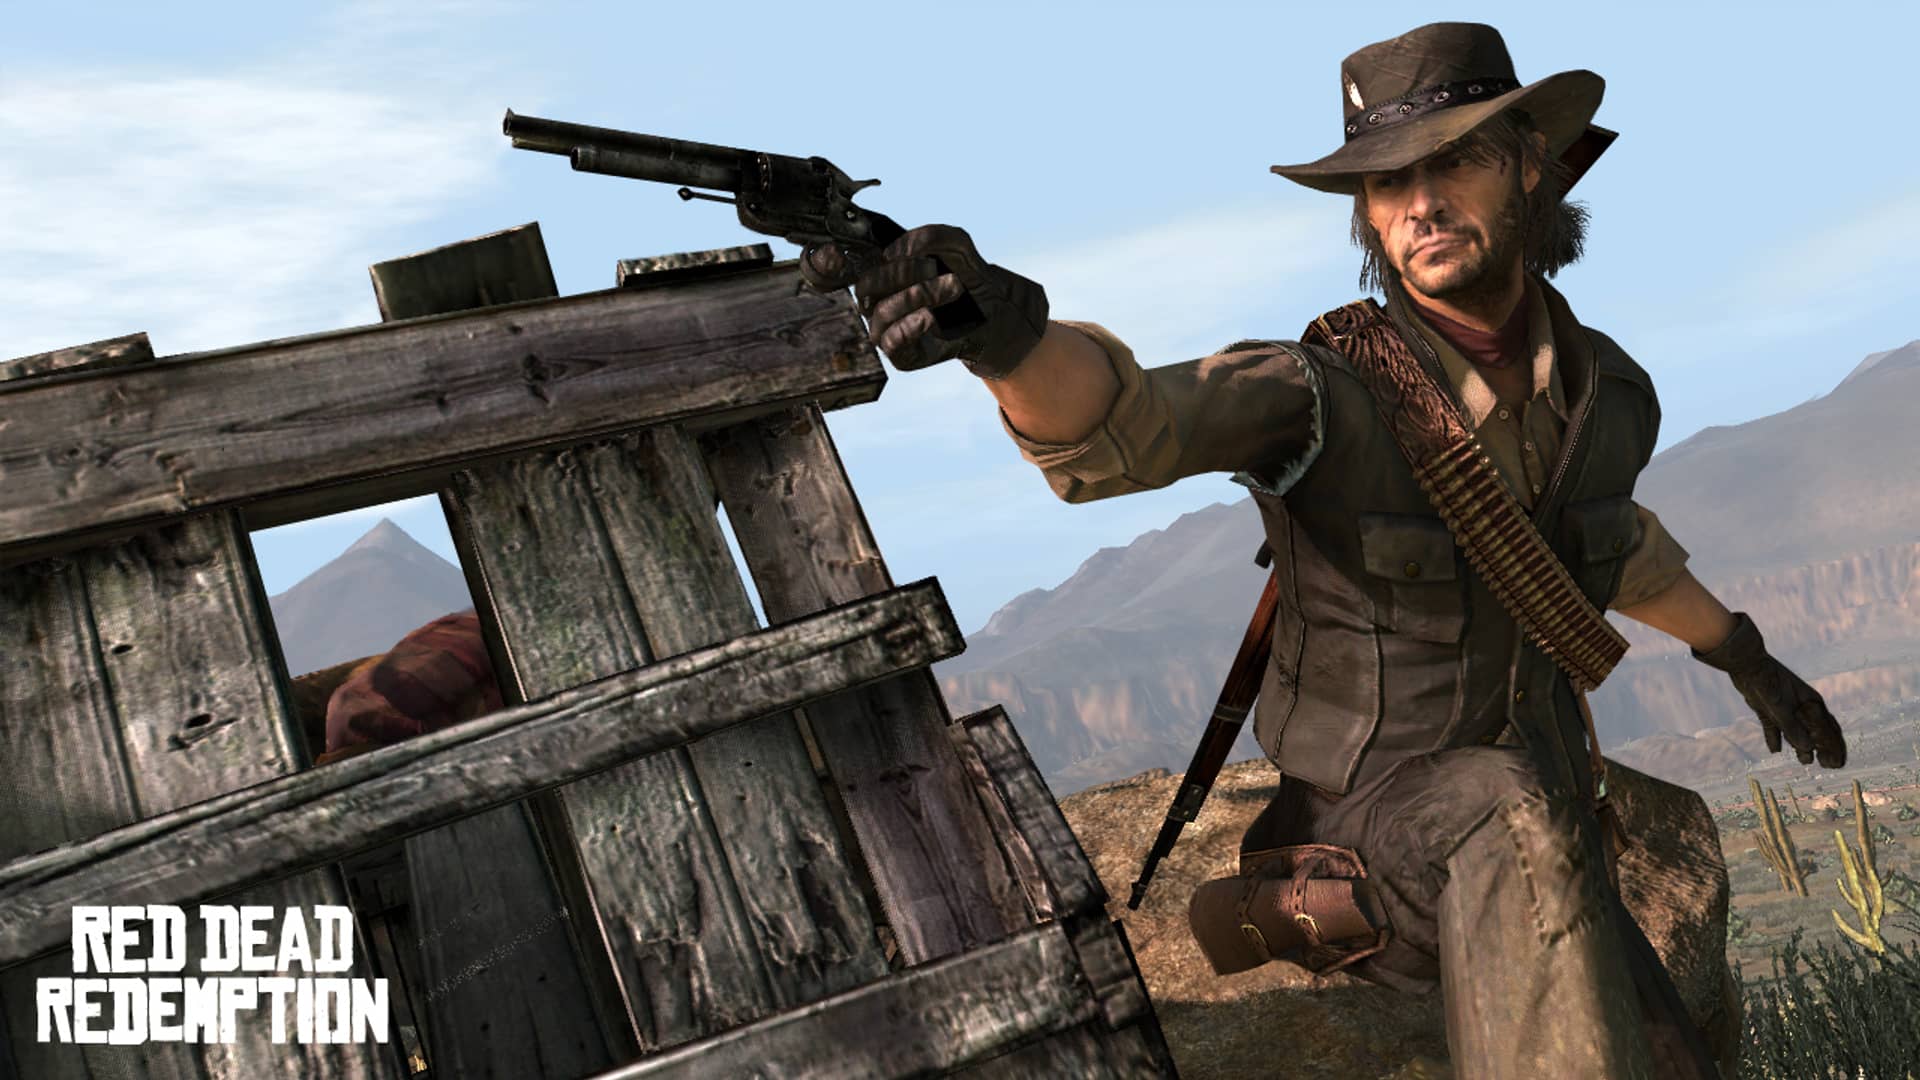 artwork del juego Red Dead Redemption que es uno de los mejores juegos de la xbox 360